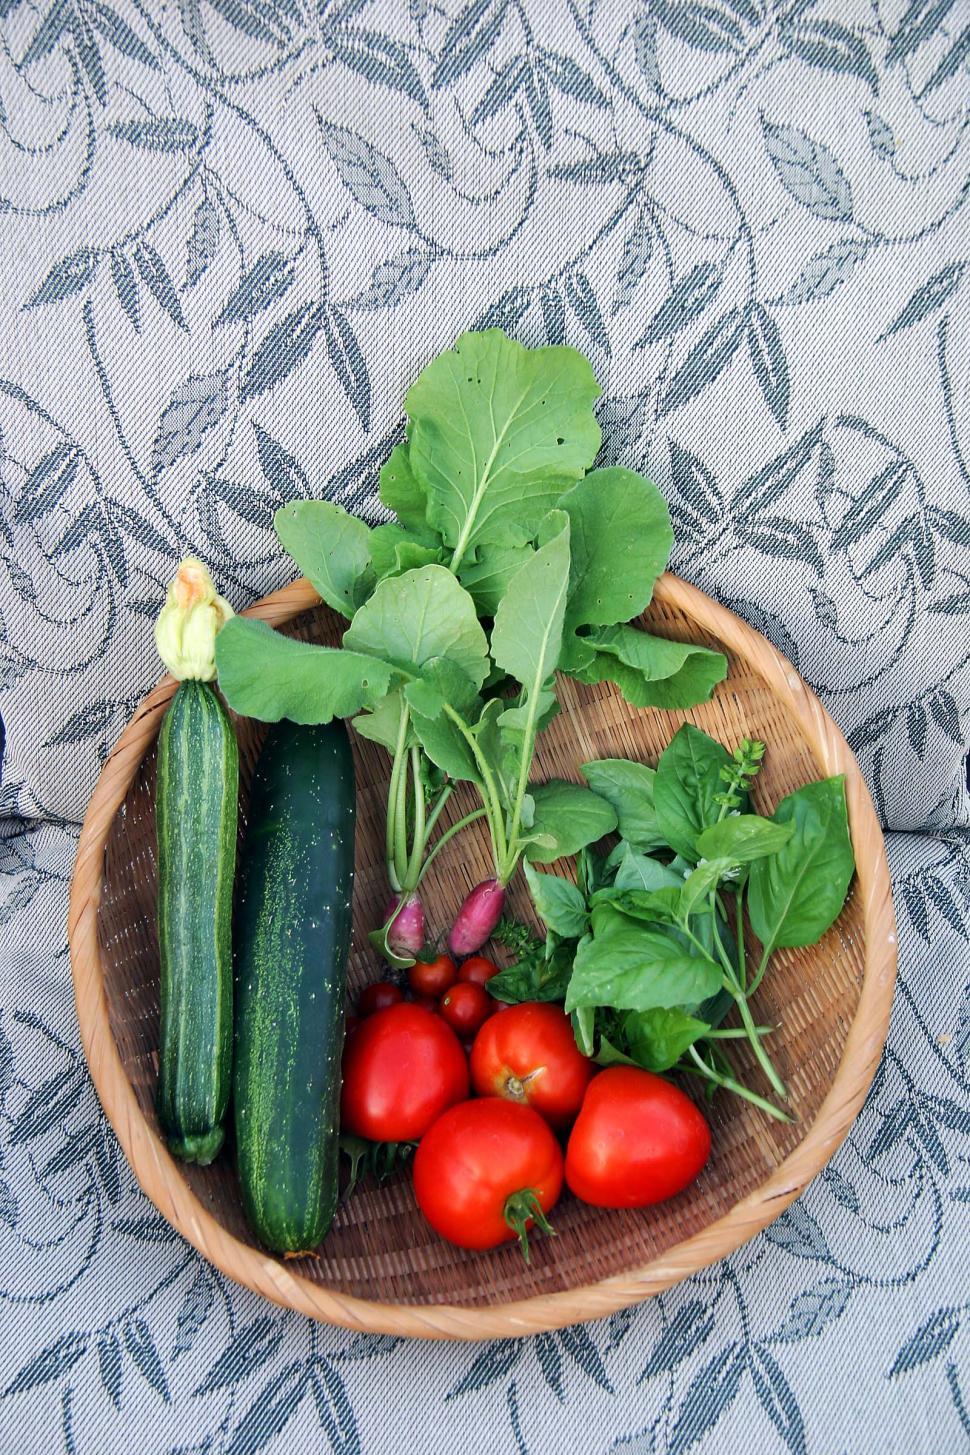 Free Image of Basket of veggies 